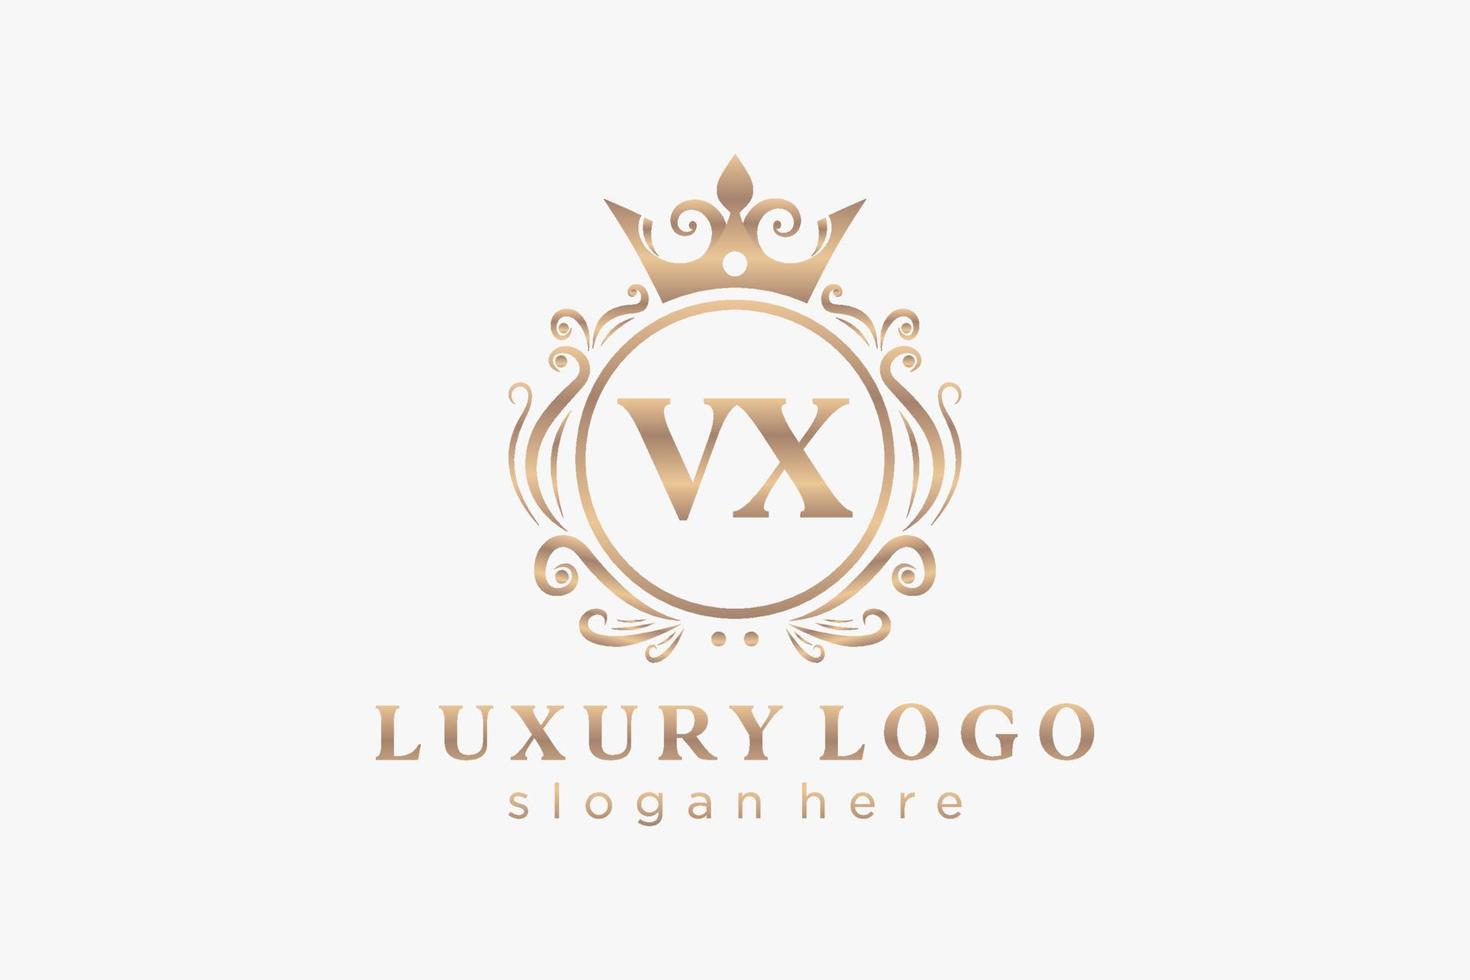 Royal Luxury Logo-Vorlage mit anfänglichem vx-Buchstaben in Vektorgrafiken für Restaurant, Lizenzgebühren, Boutique, Café, Hotel, Heraldik, Schmuck, Mode und andere Vektorillustrationen. vektor